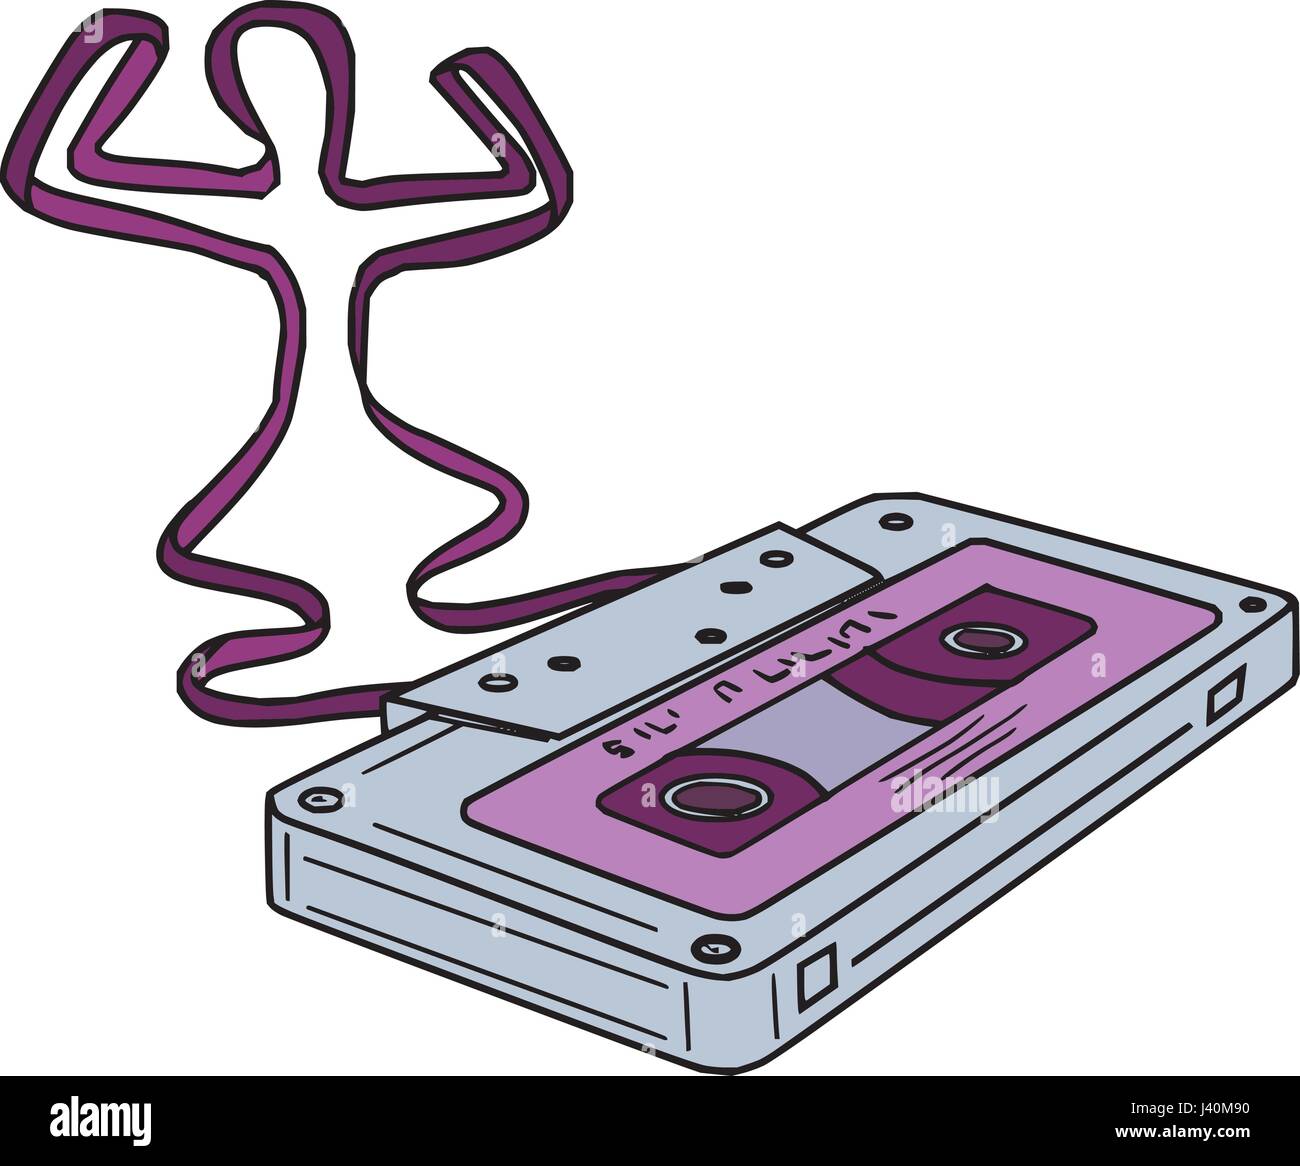 Mono-Linie Stil Illustration einen kompakten Kassette oder Magnavox, auch gemeinhin als Kassette, Audio-Kassette, oder einfach Band oder Kassette, wit Stock Vektor